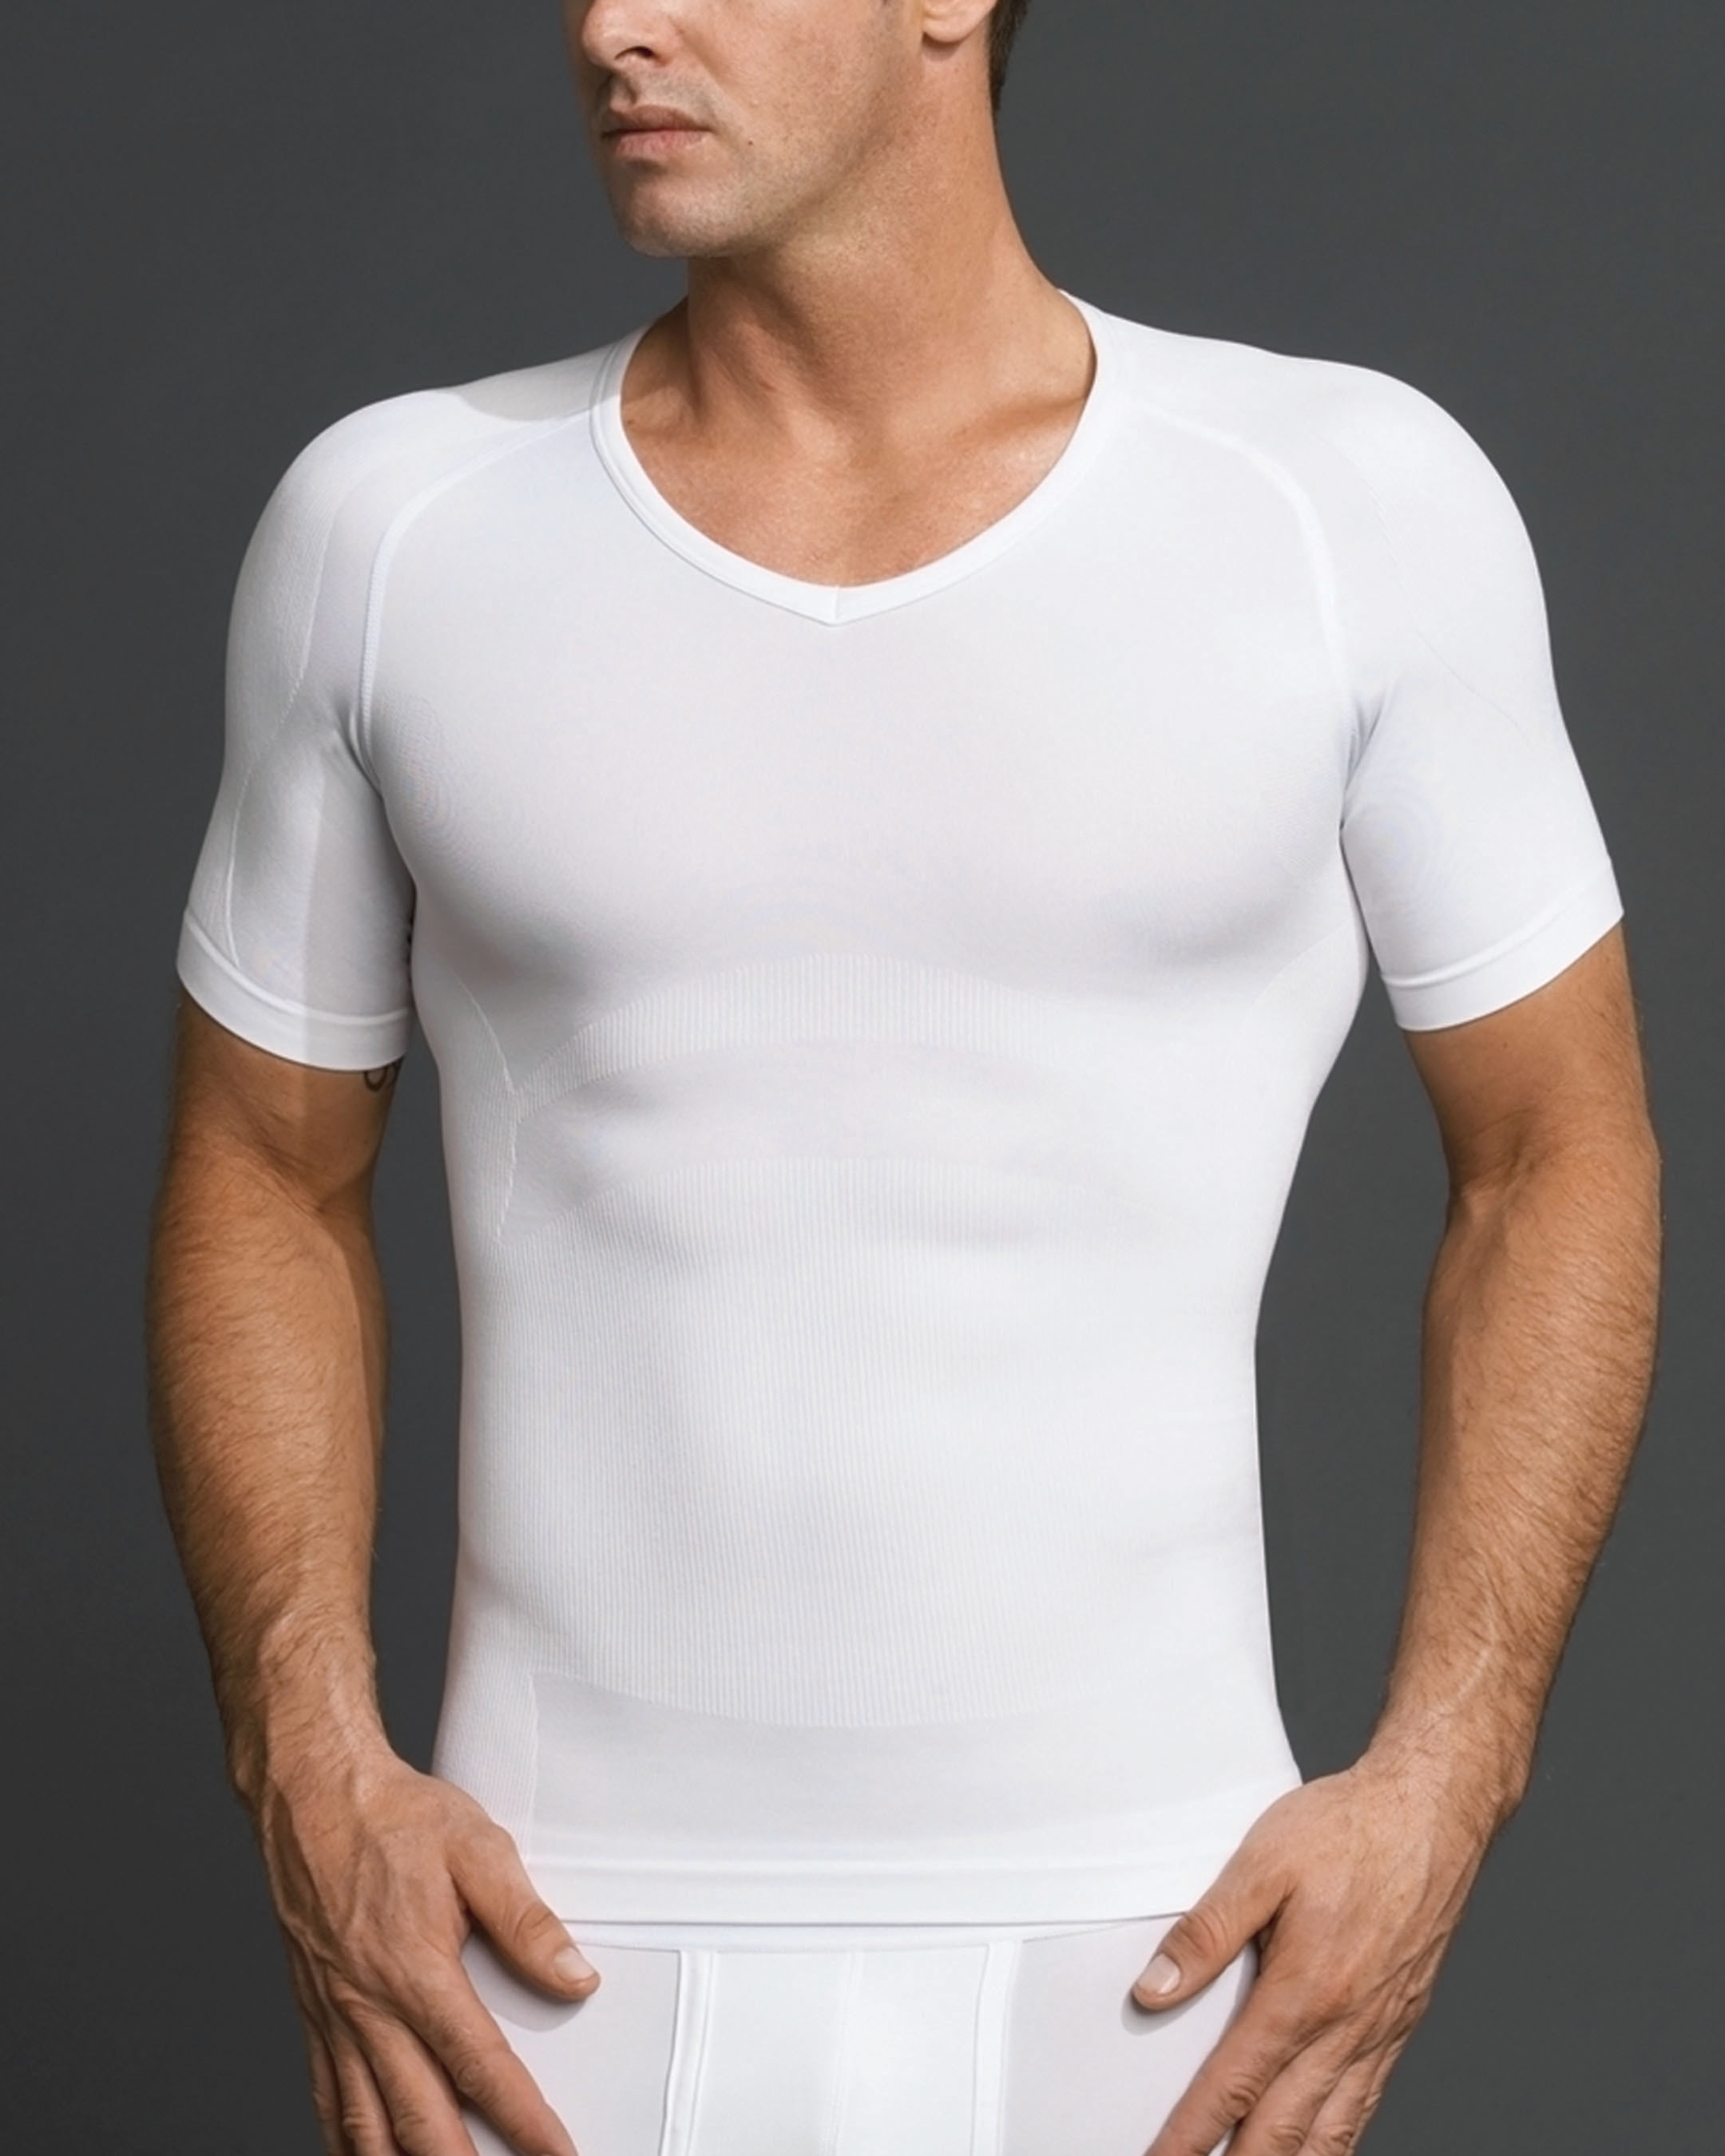 Equmen: Wondershirt for Men Optimizes Body Shape